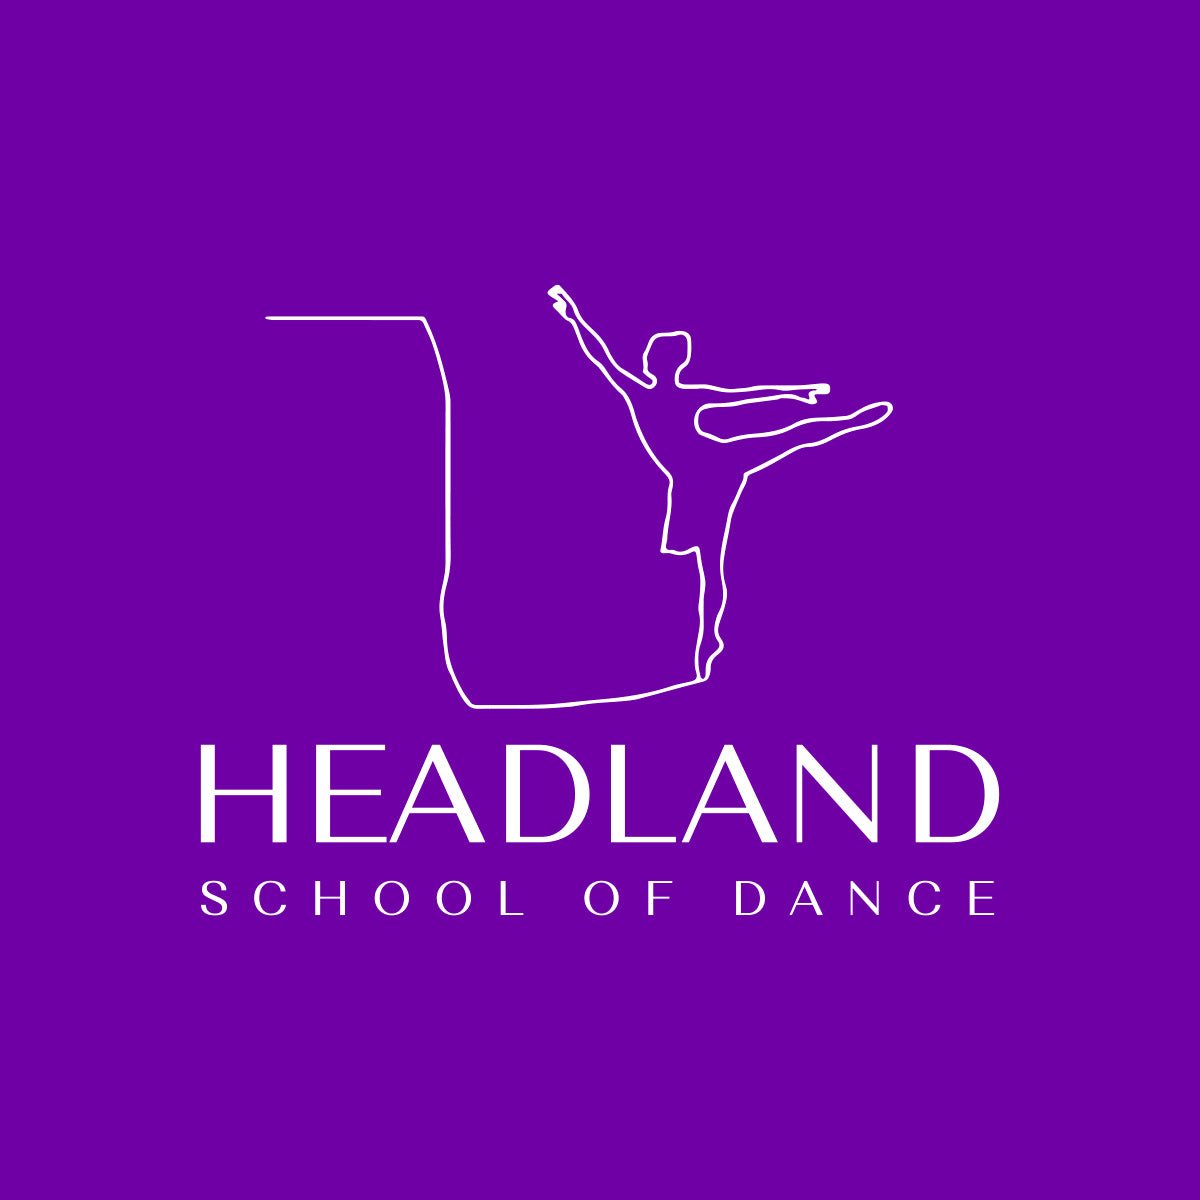 Headland School of Dance